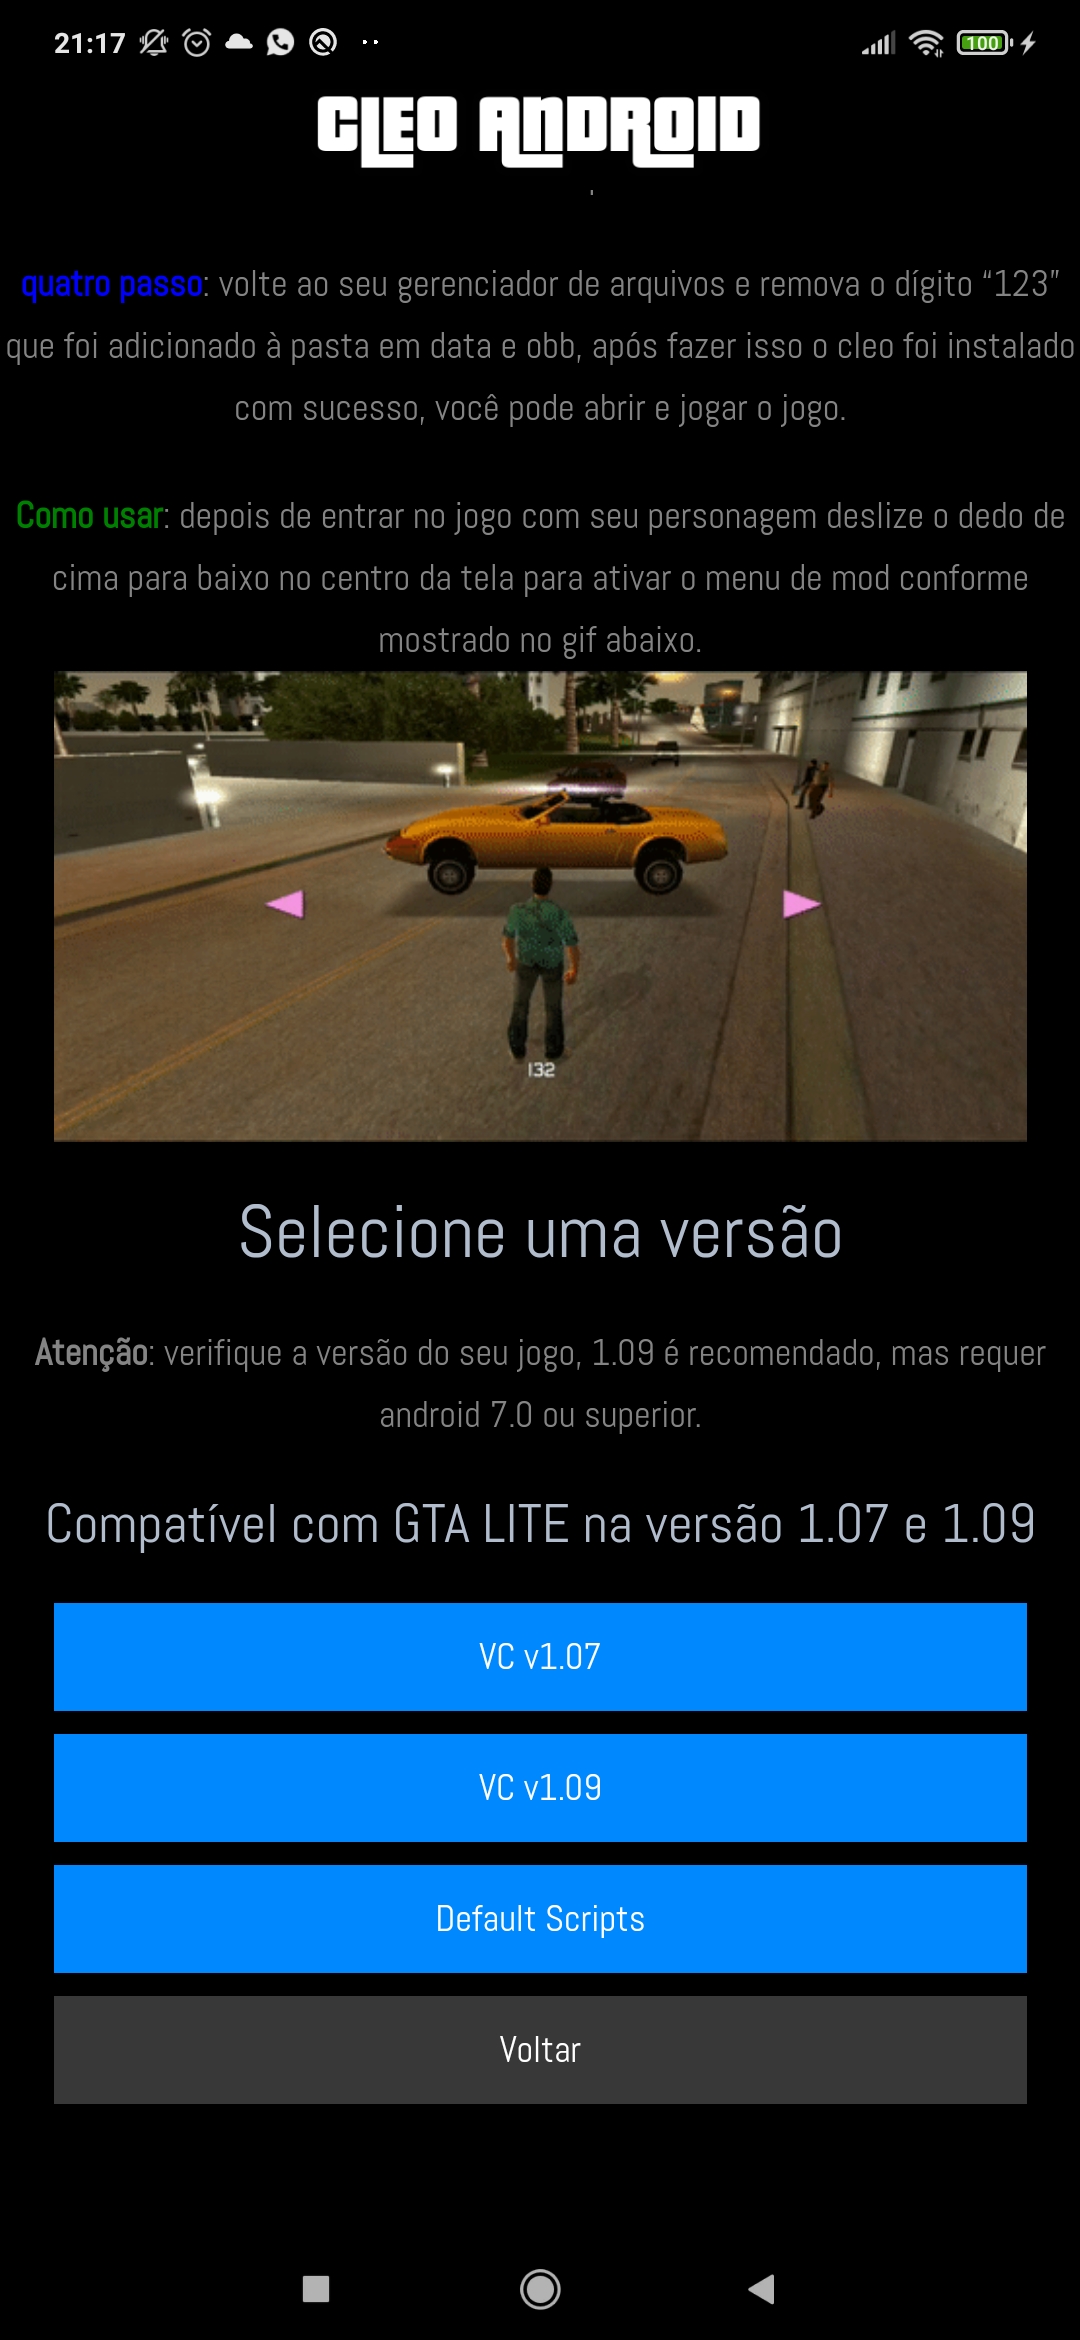 GTA 3 v3 1.4 LITE – Download – Android (APK/OBB+CLEO MOD) – ANDROGAMER